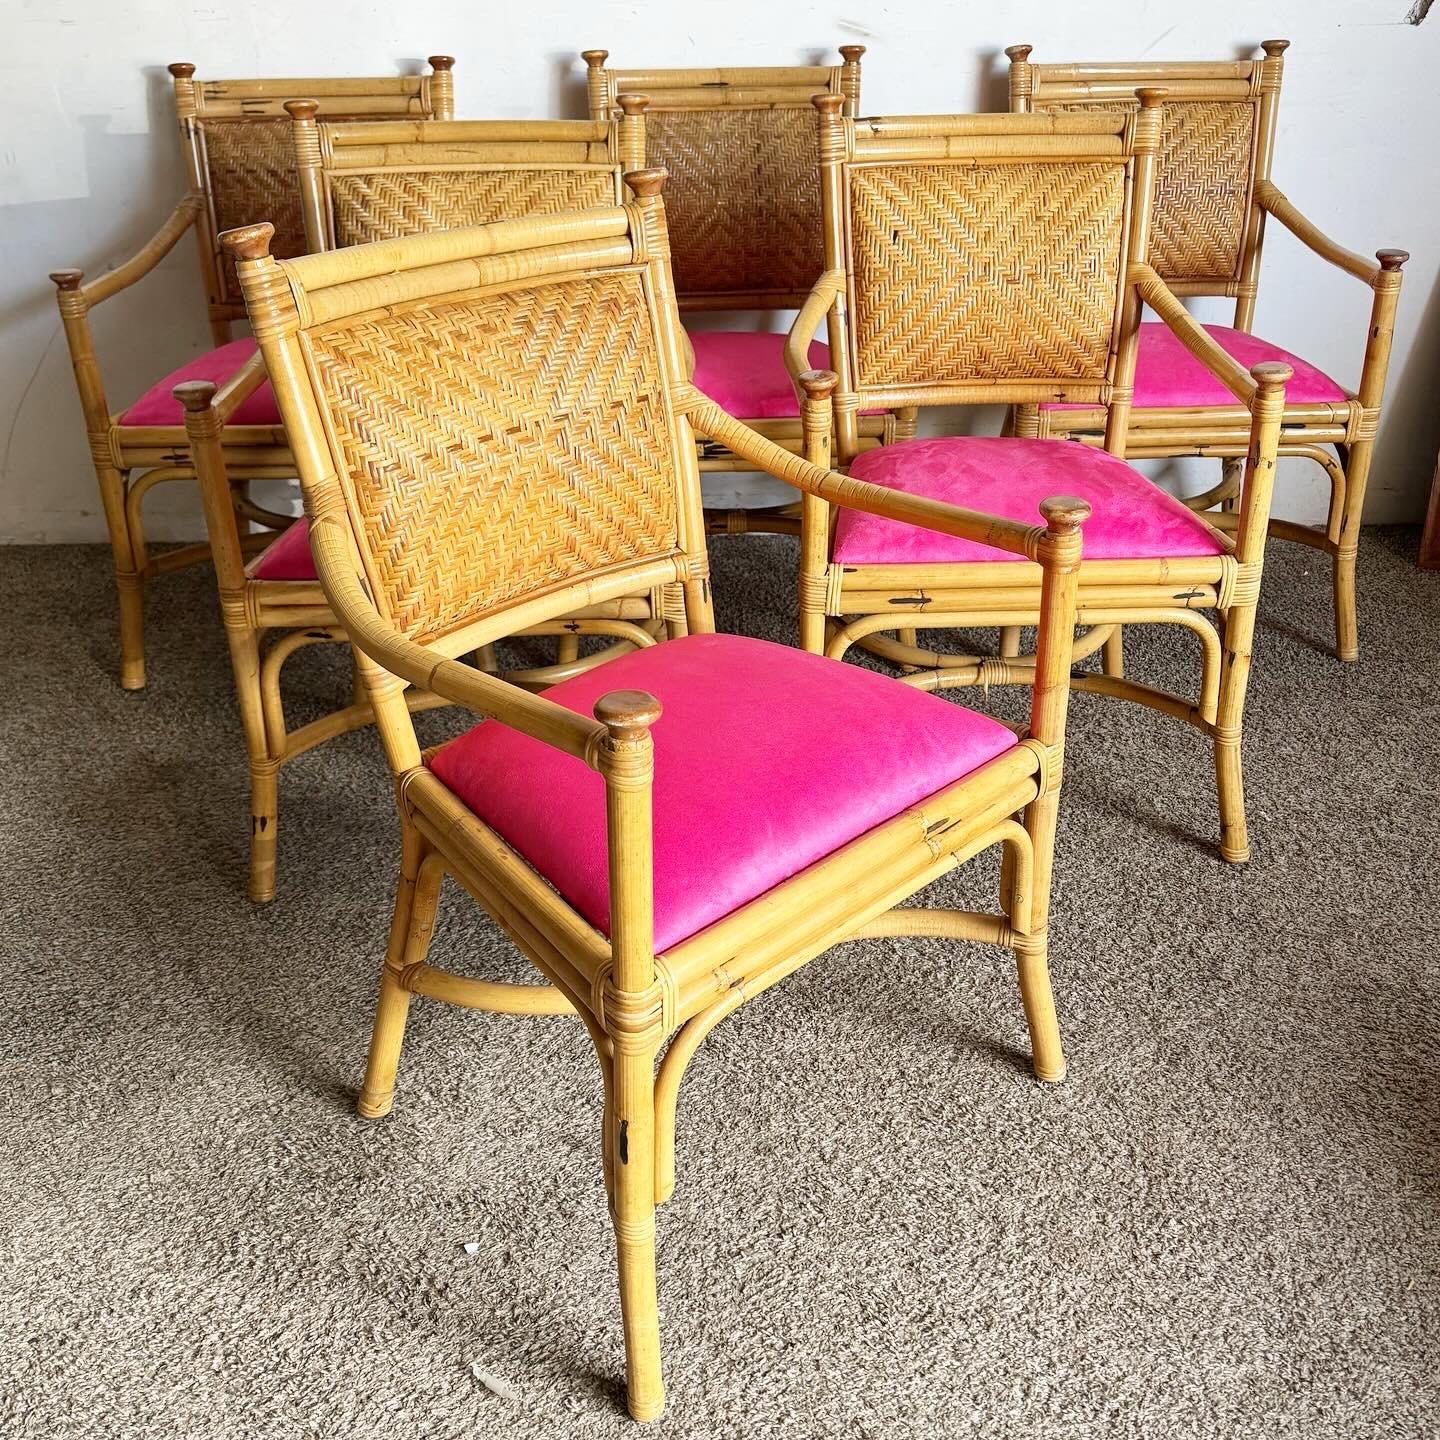 Cet ensemble de six chaises à bras de salle à manger Boho Chic présente une construction en osier naturel, en rotin et en bambou, accentuée par des coussins rose vif. Parfaites pour ajouter une touche vibrante à votre espace repas, ces chaises